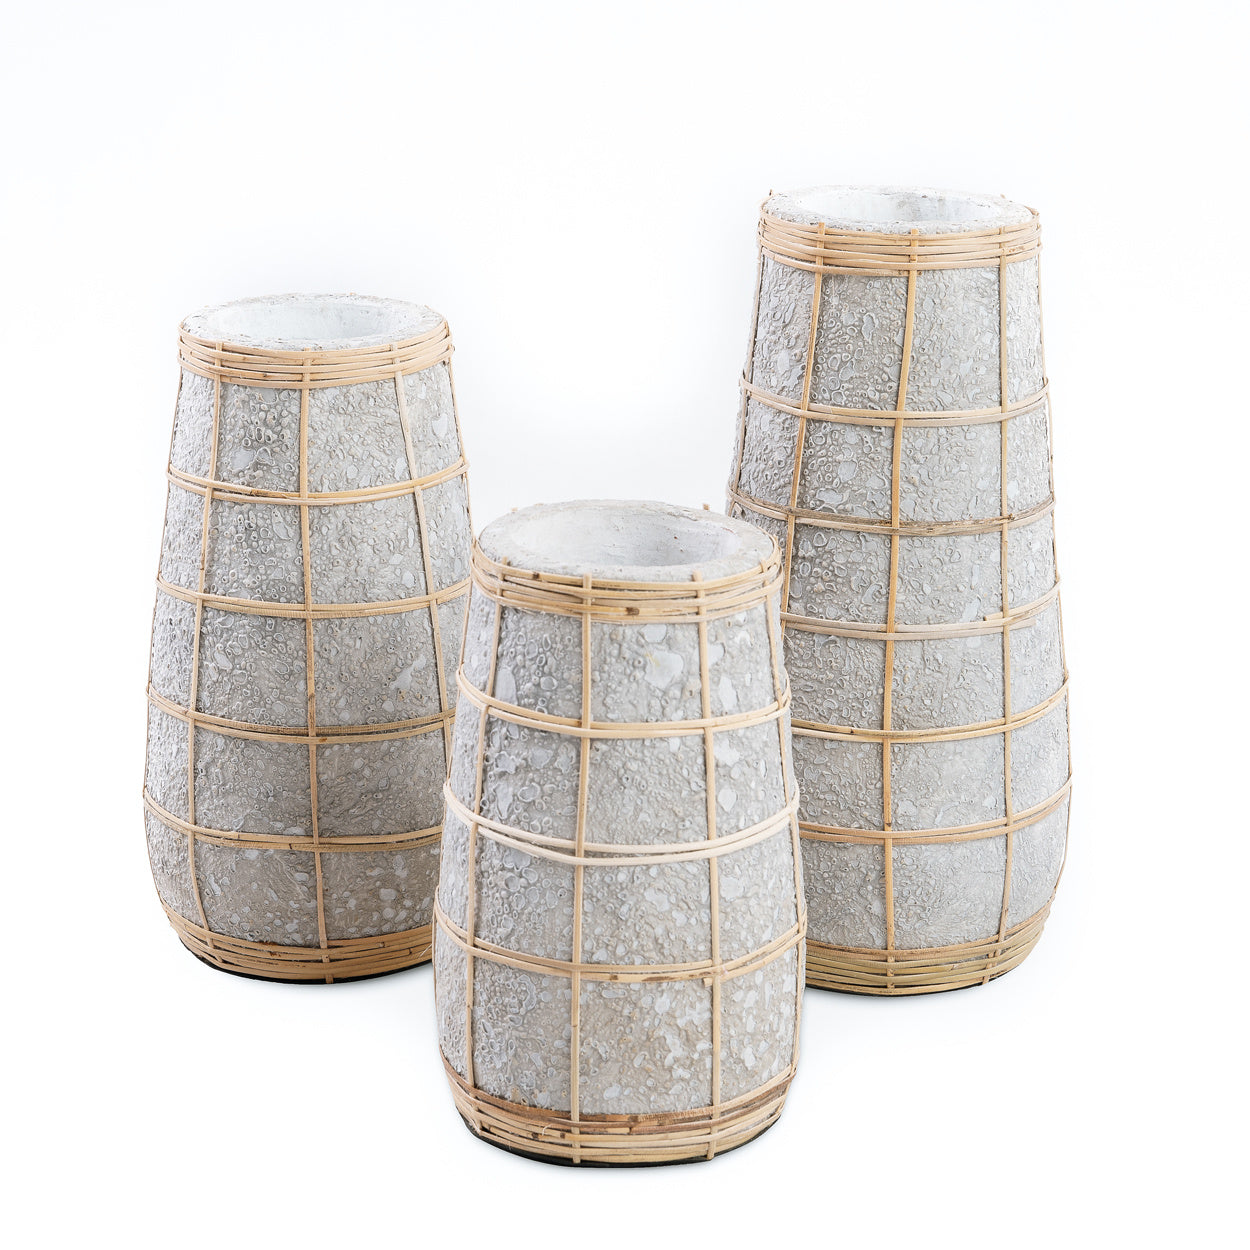 THE CUTIE Vase - Concrete Natural